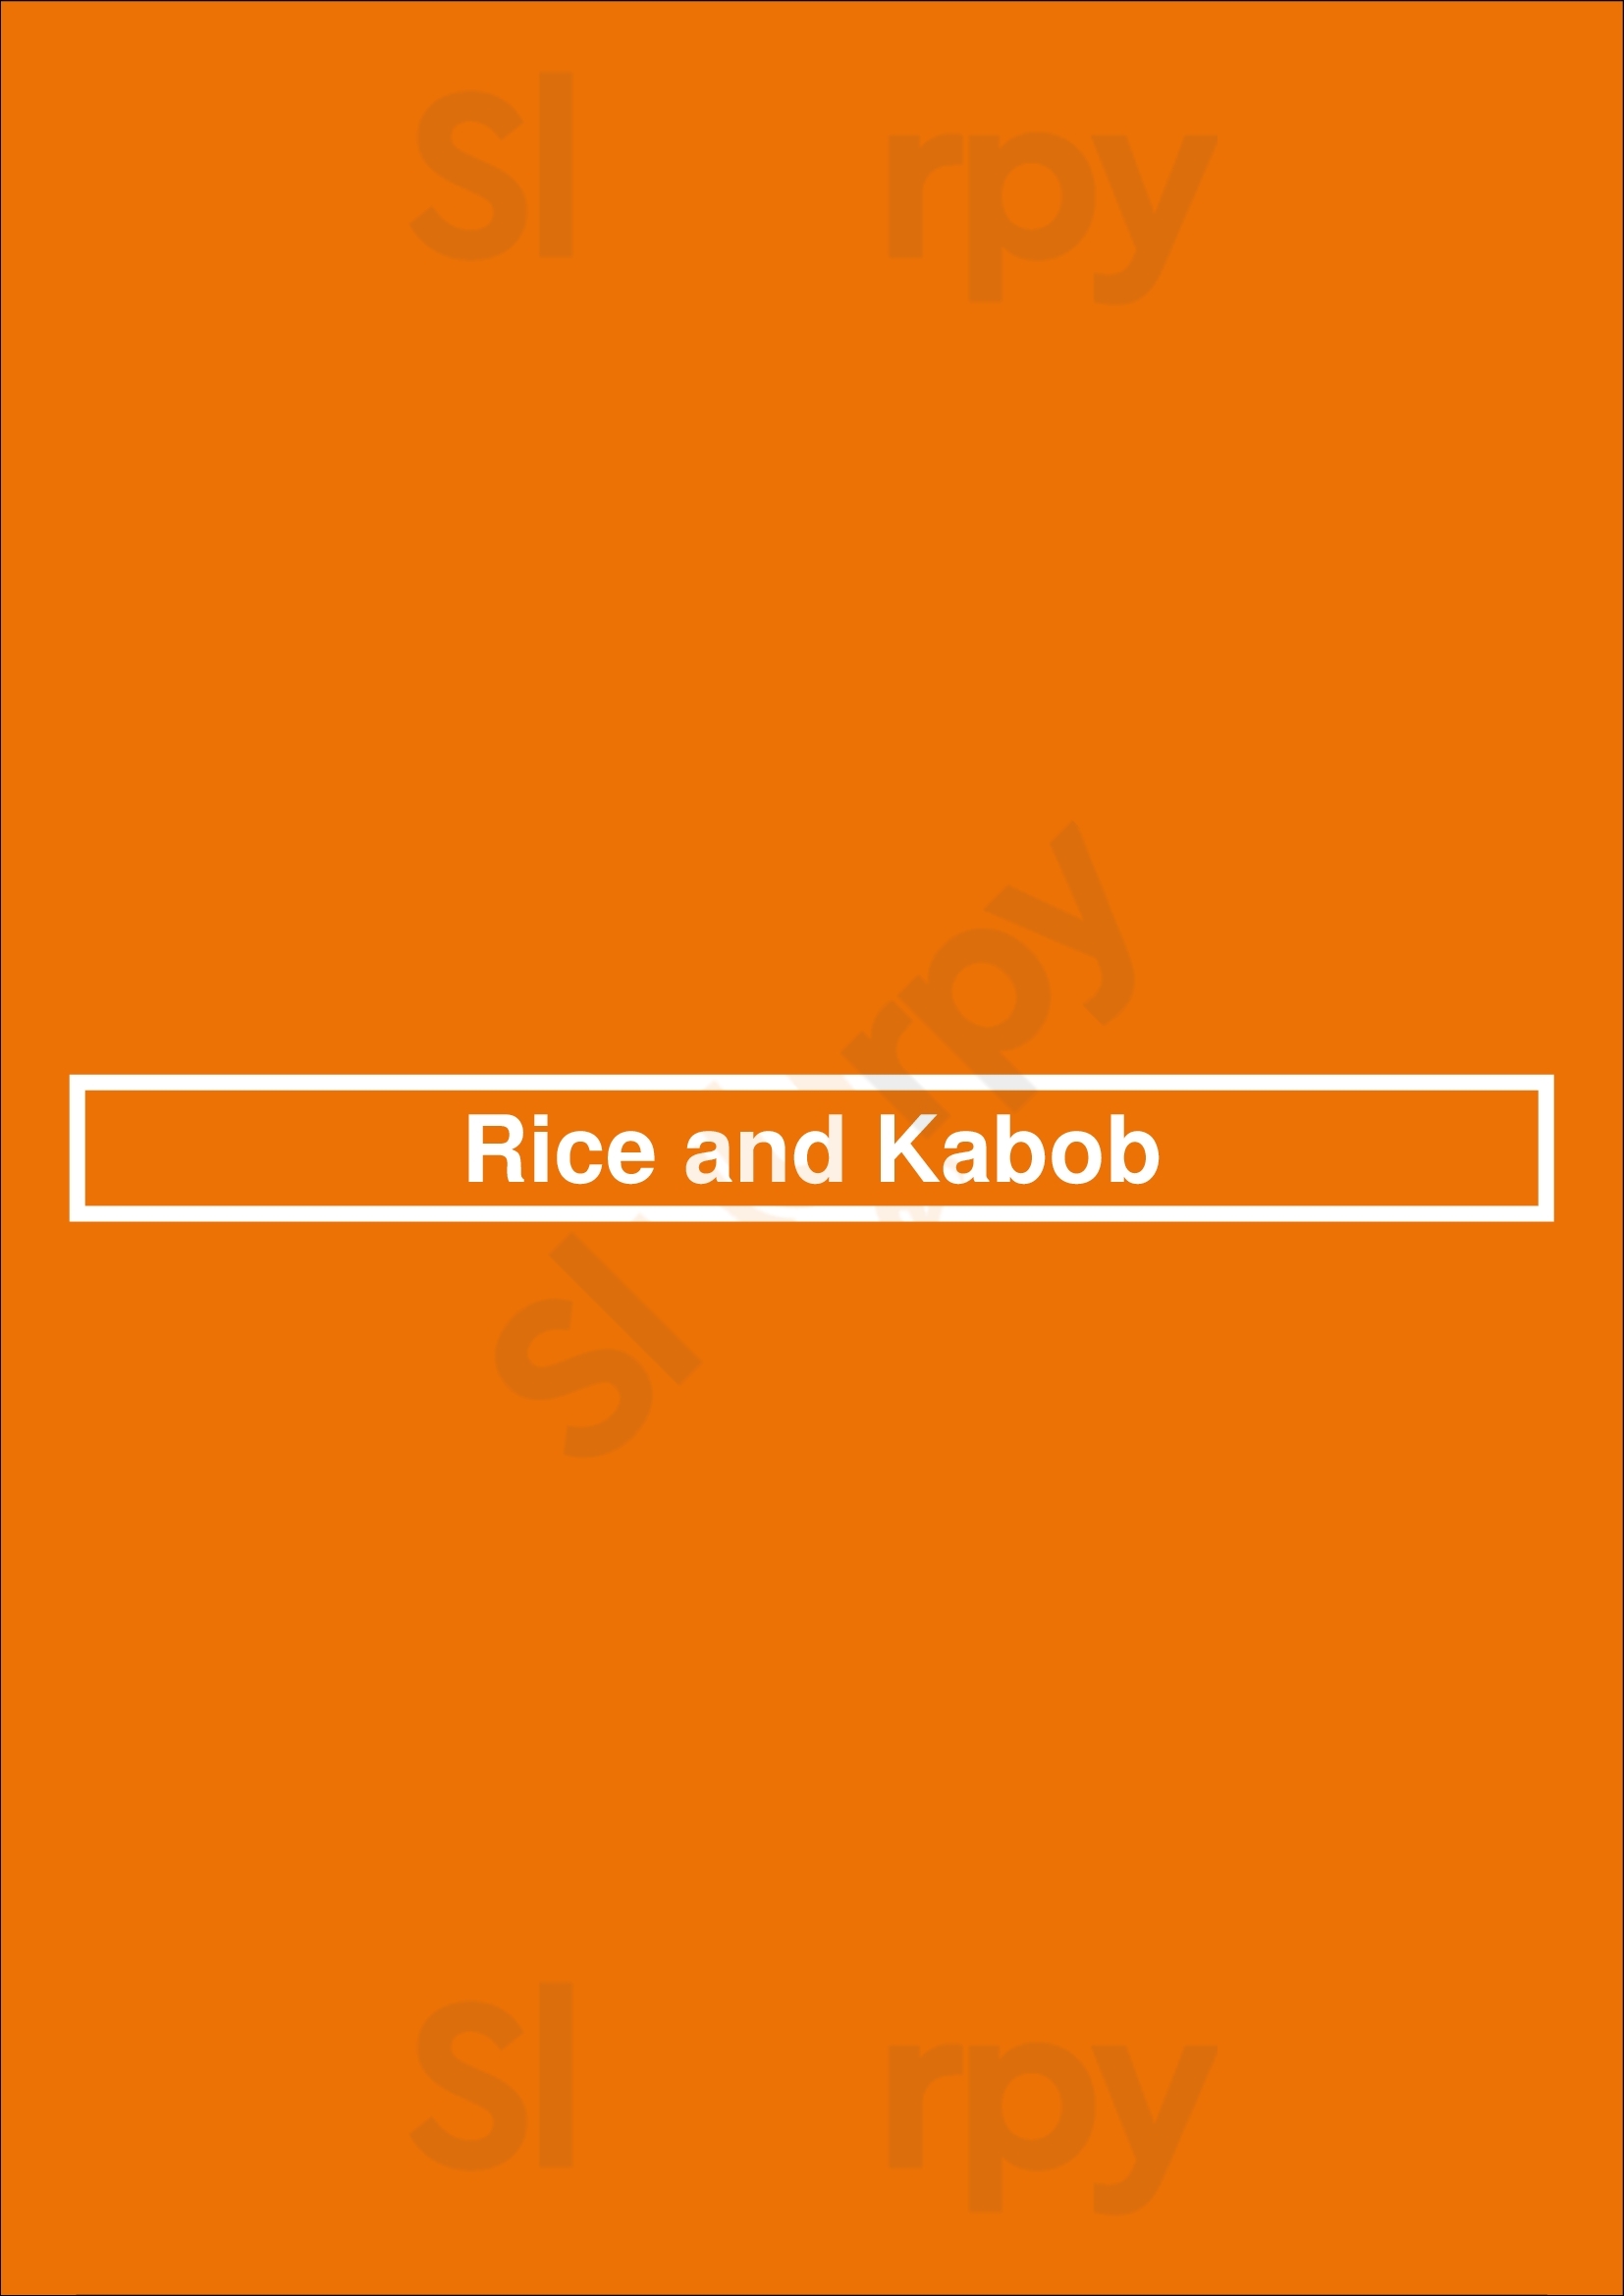 Rice And Kabob Denver Menu - 1